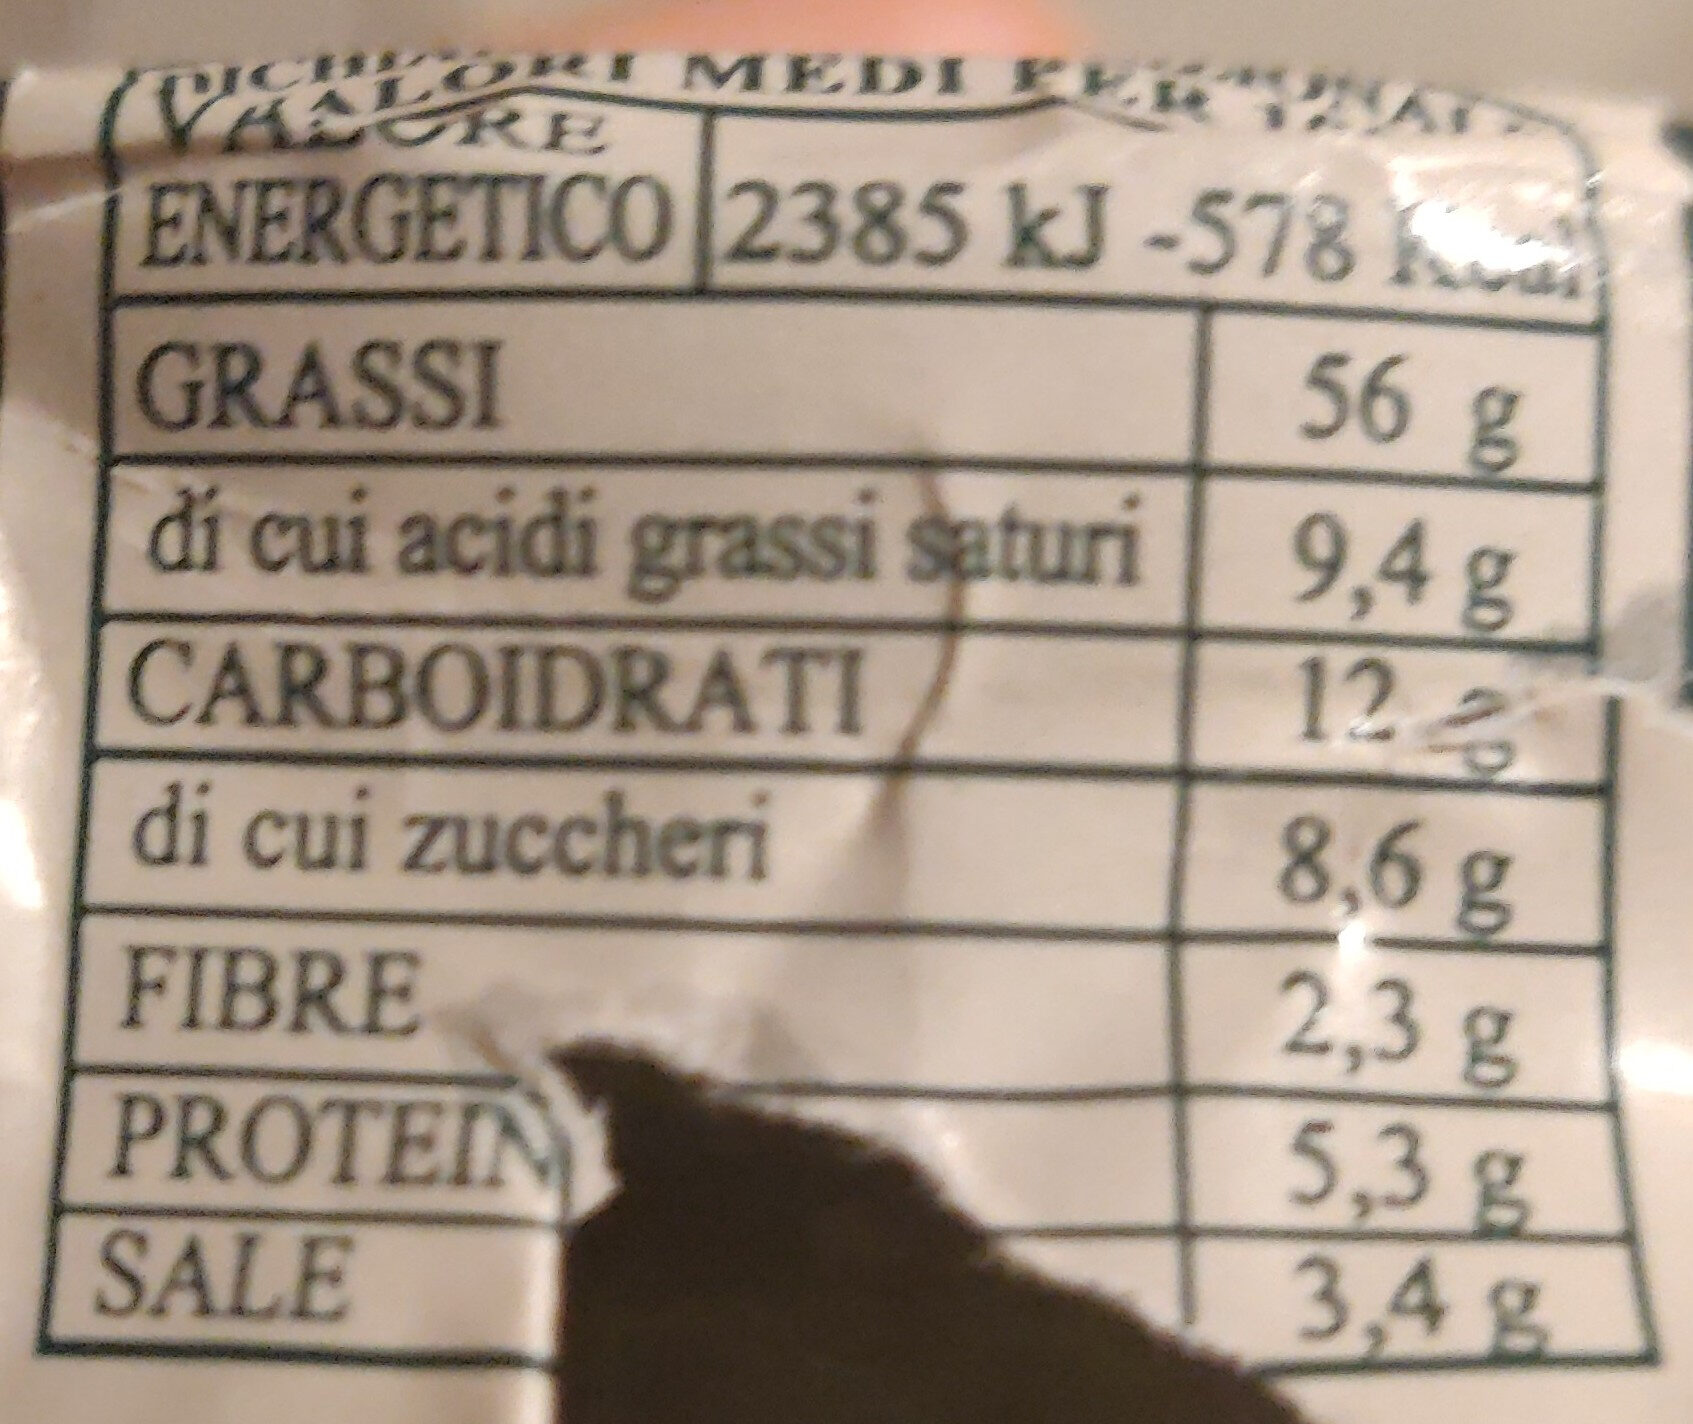 Pesto alla genovese in olio extra vergine di oliva - Informations nutritionnelles - it